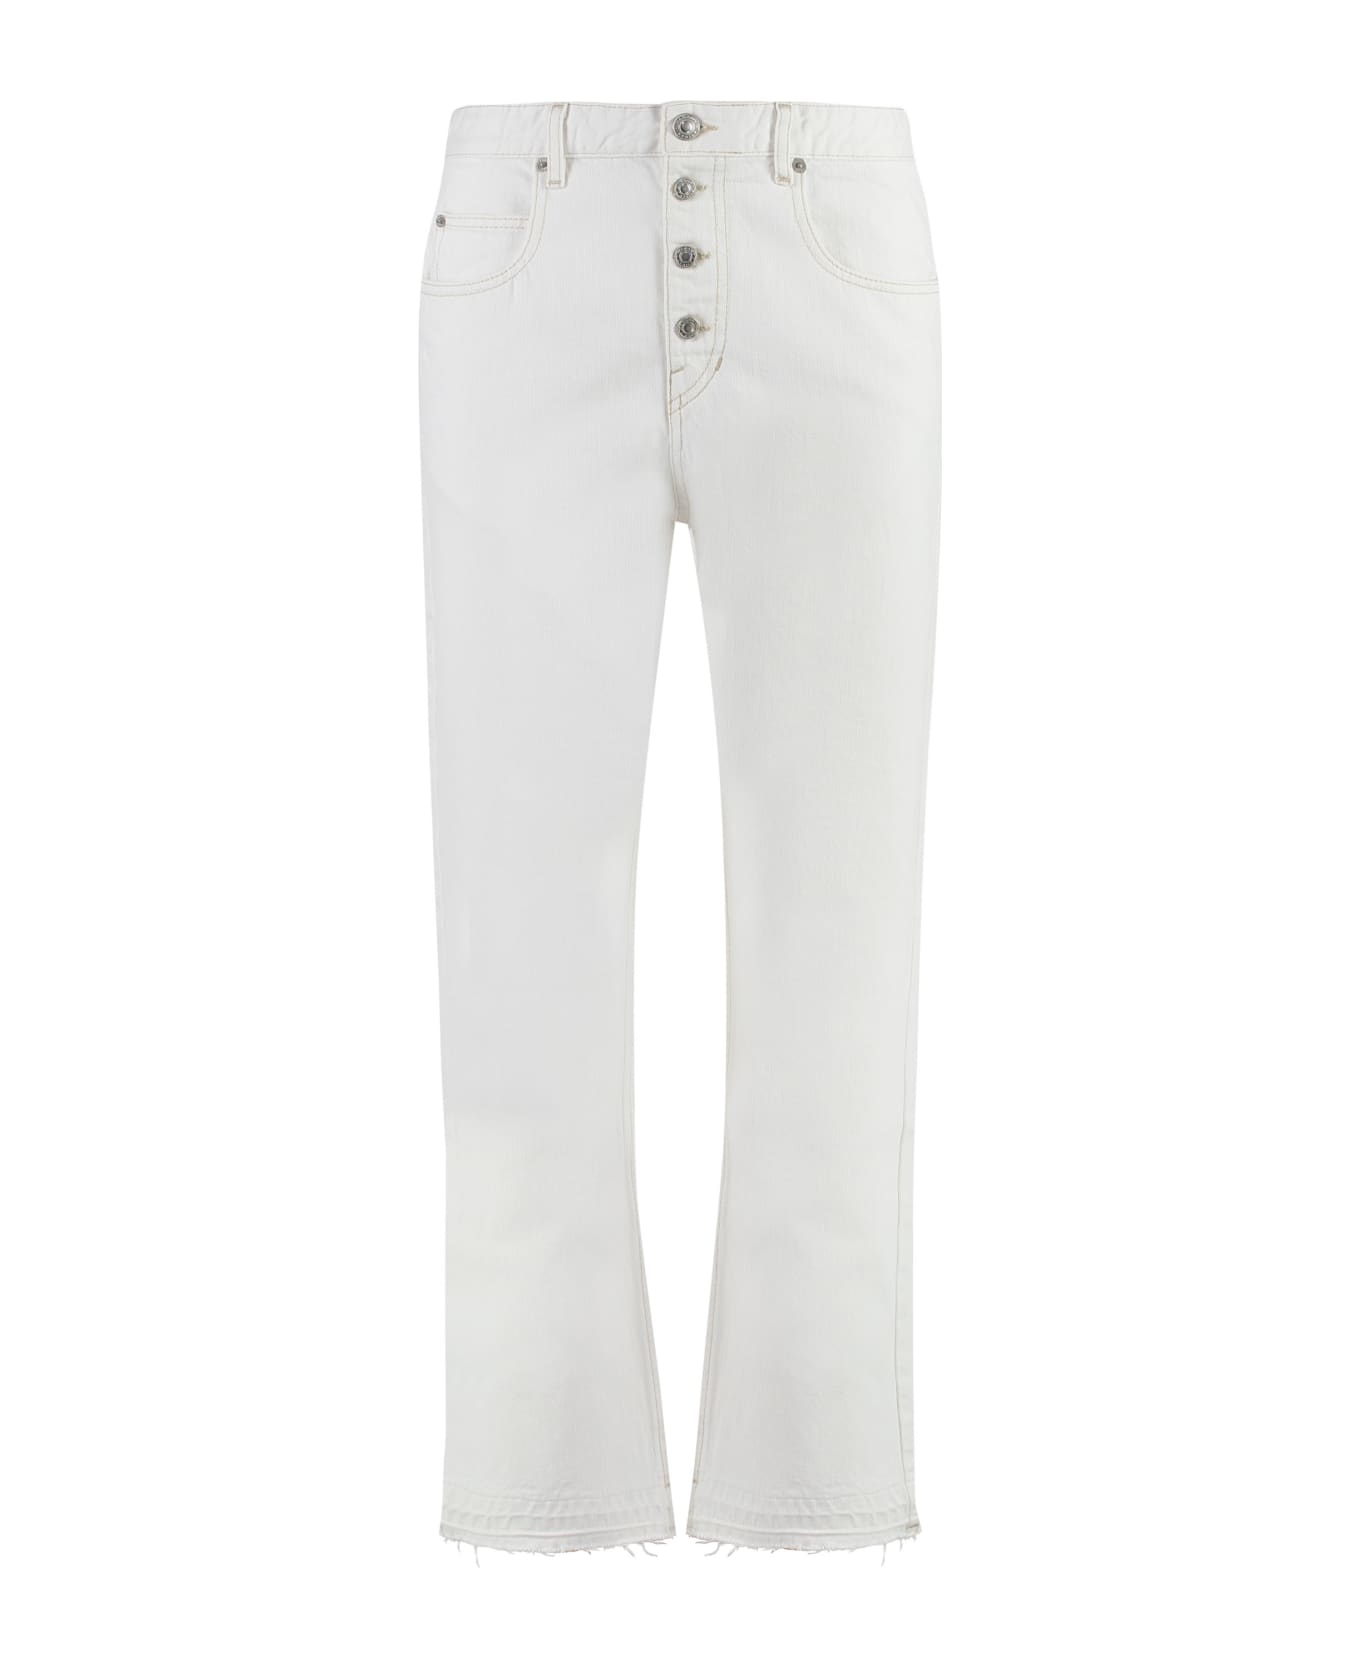 Marant Étoile Belden Straight-leg Jeans - White